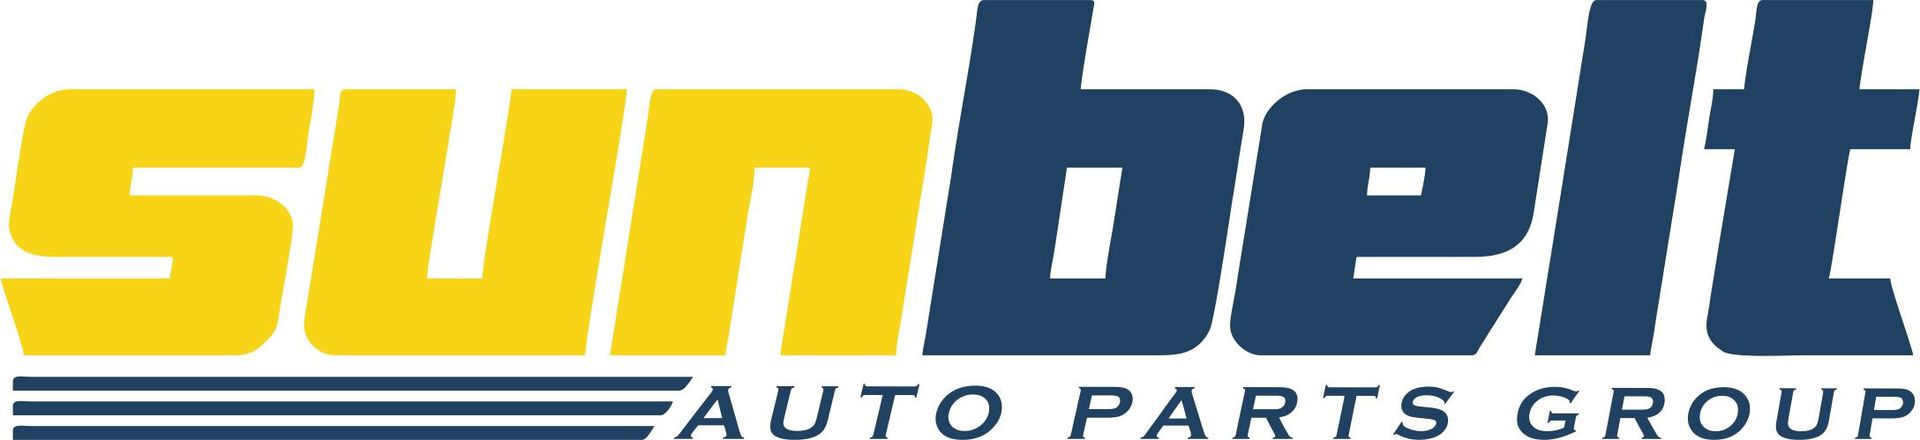 Sunbelt Auto Parts Group Inc